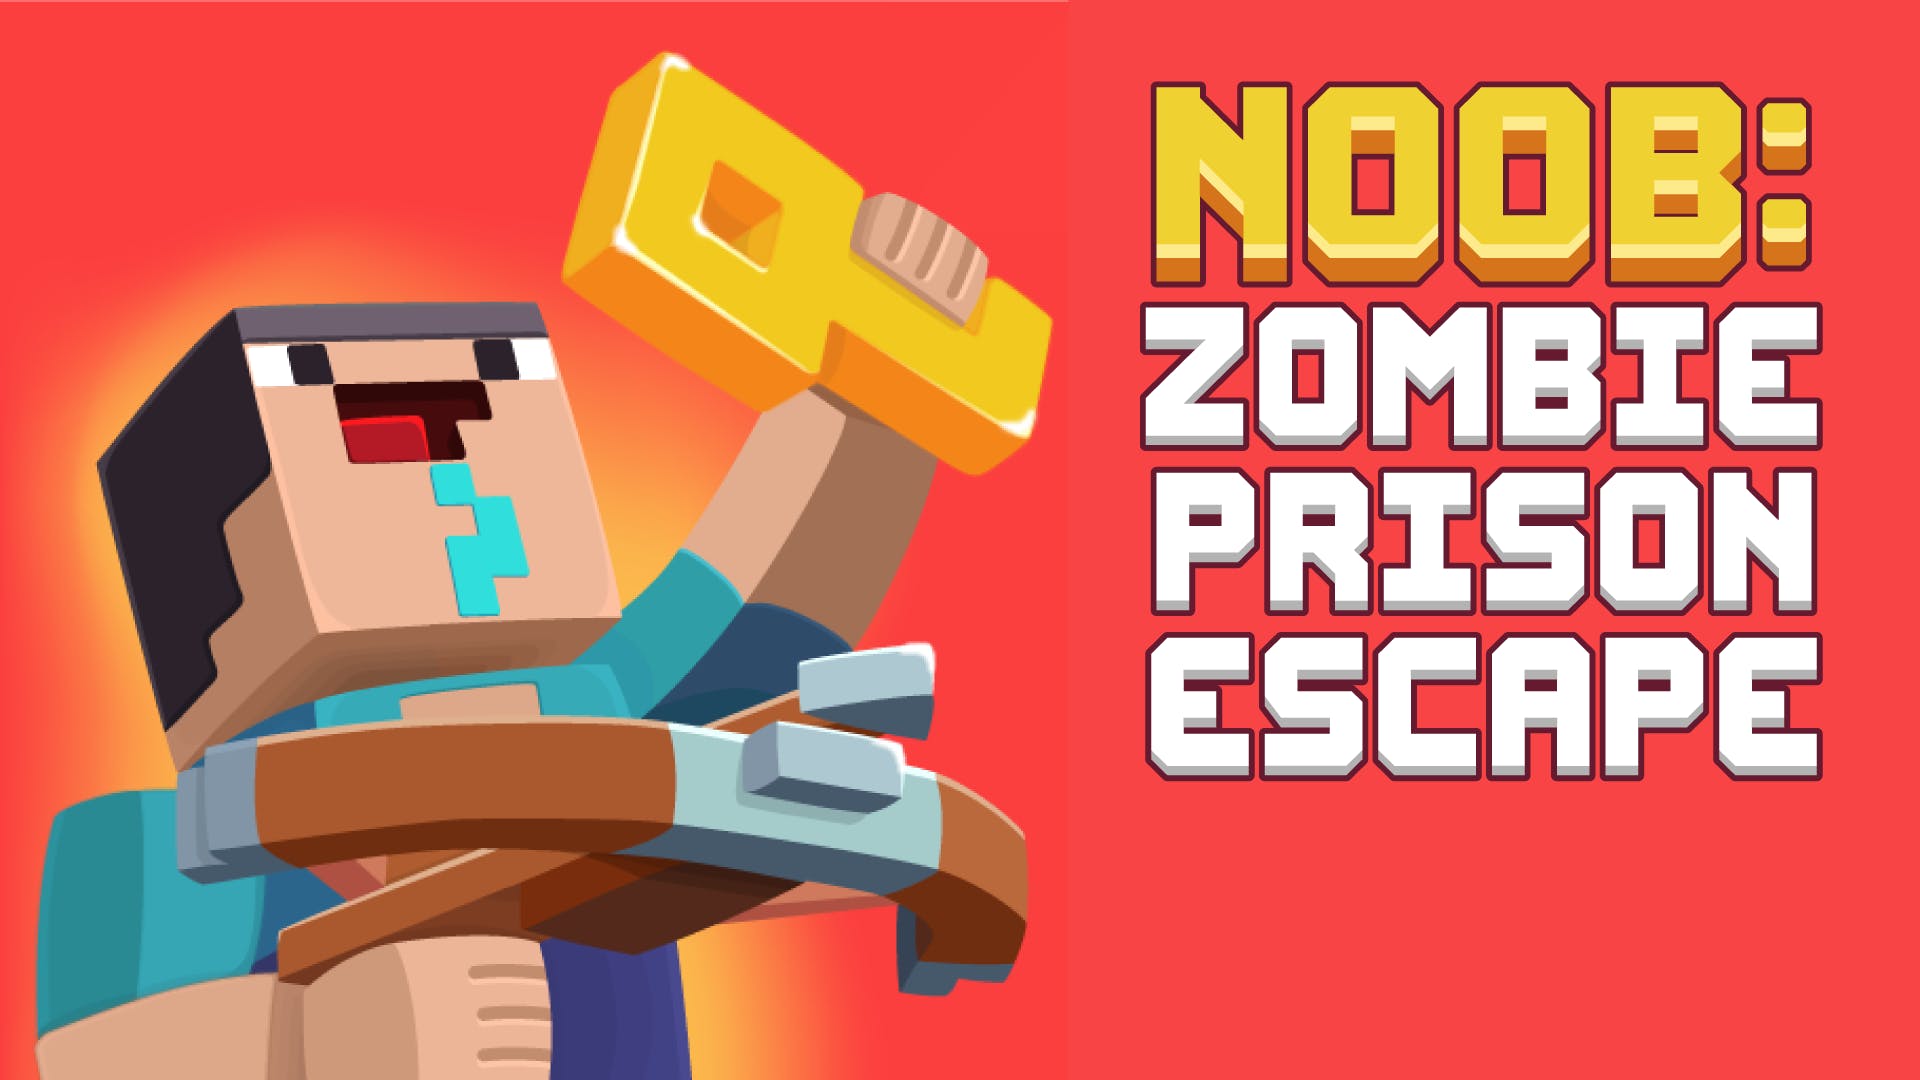 Prison Escape Stickman - Play UNBLOCKED Prison Escape Stickman on